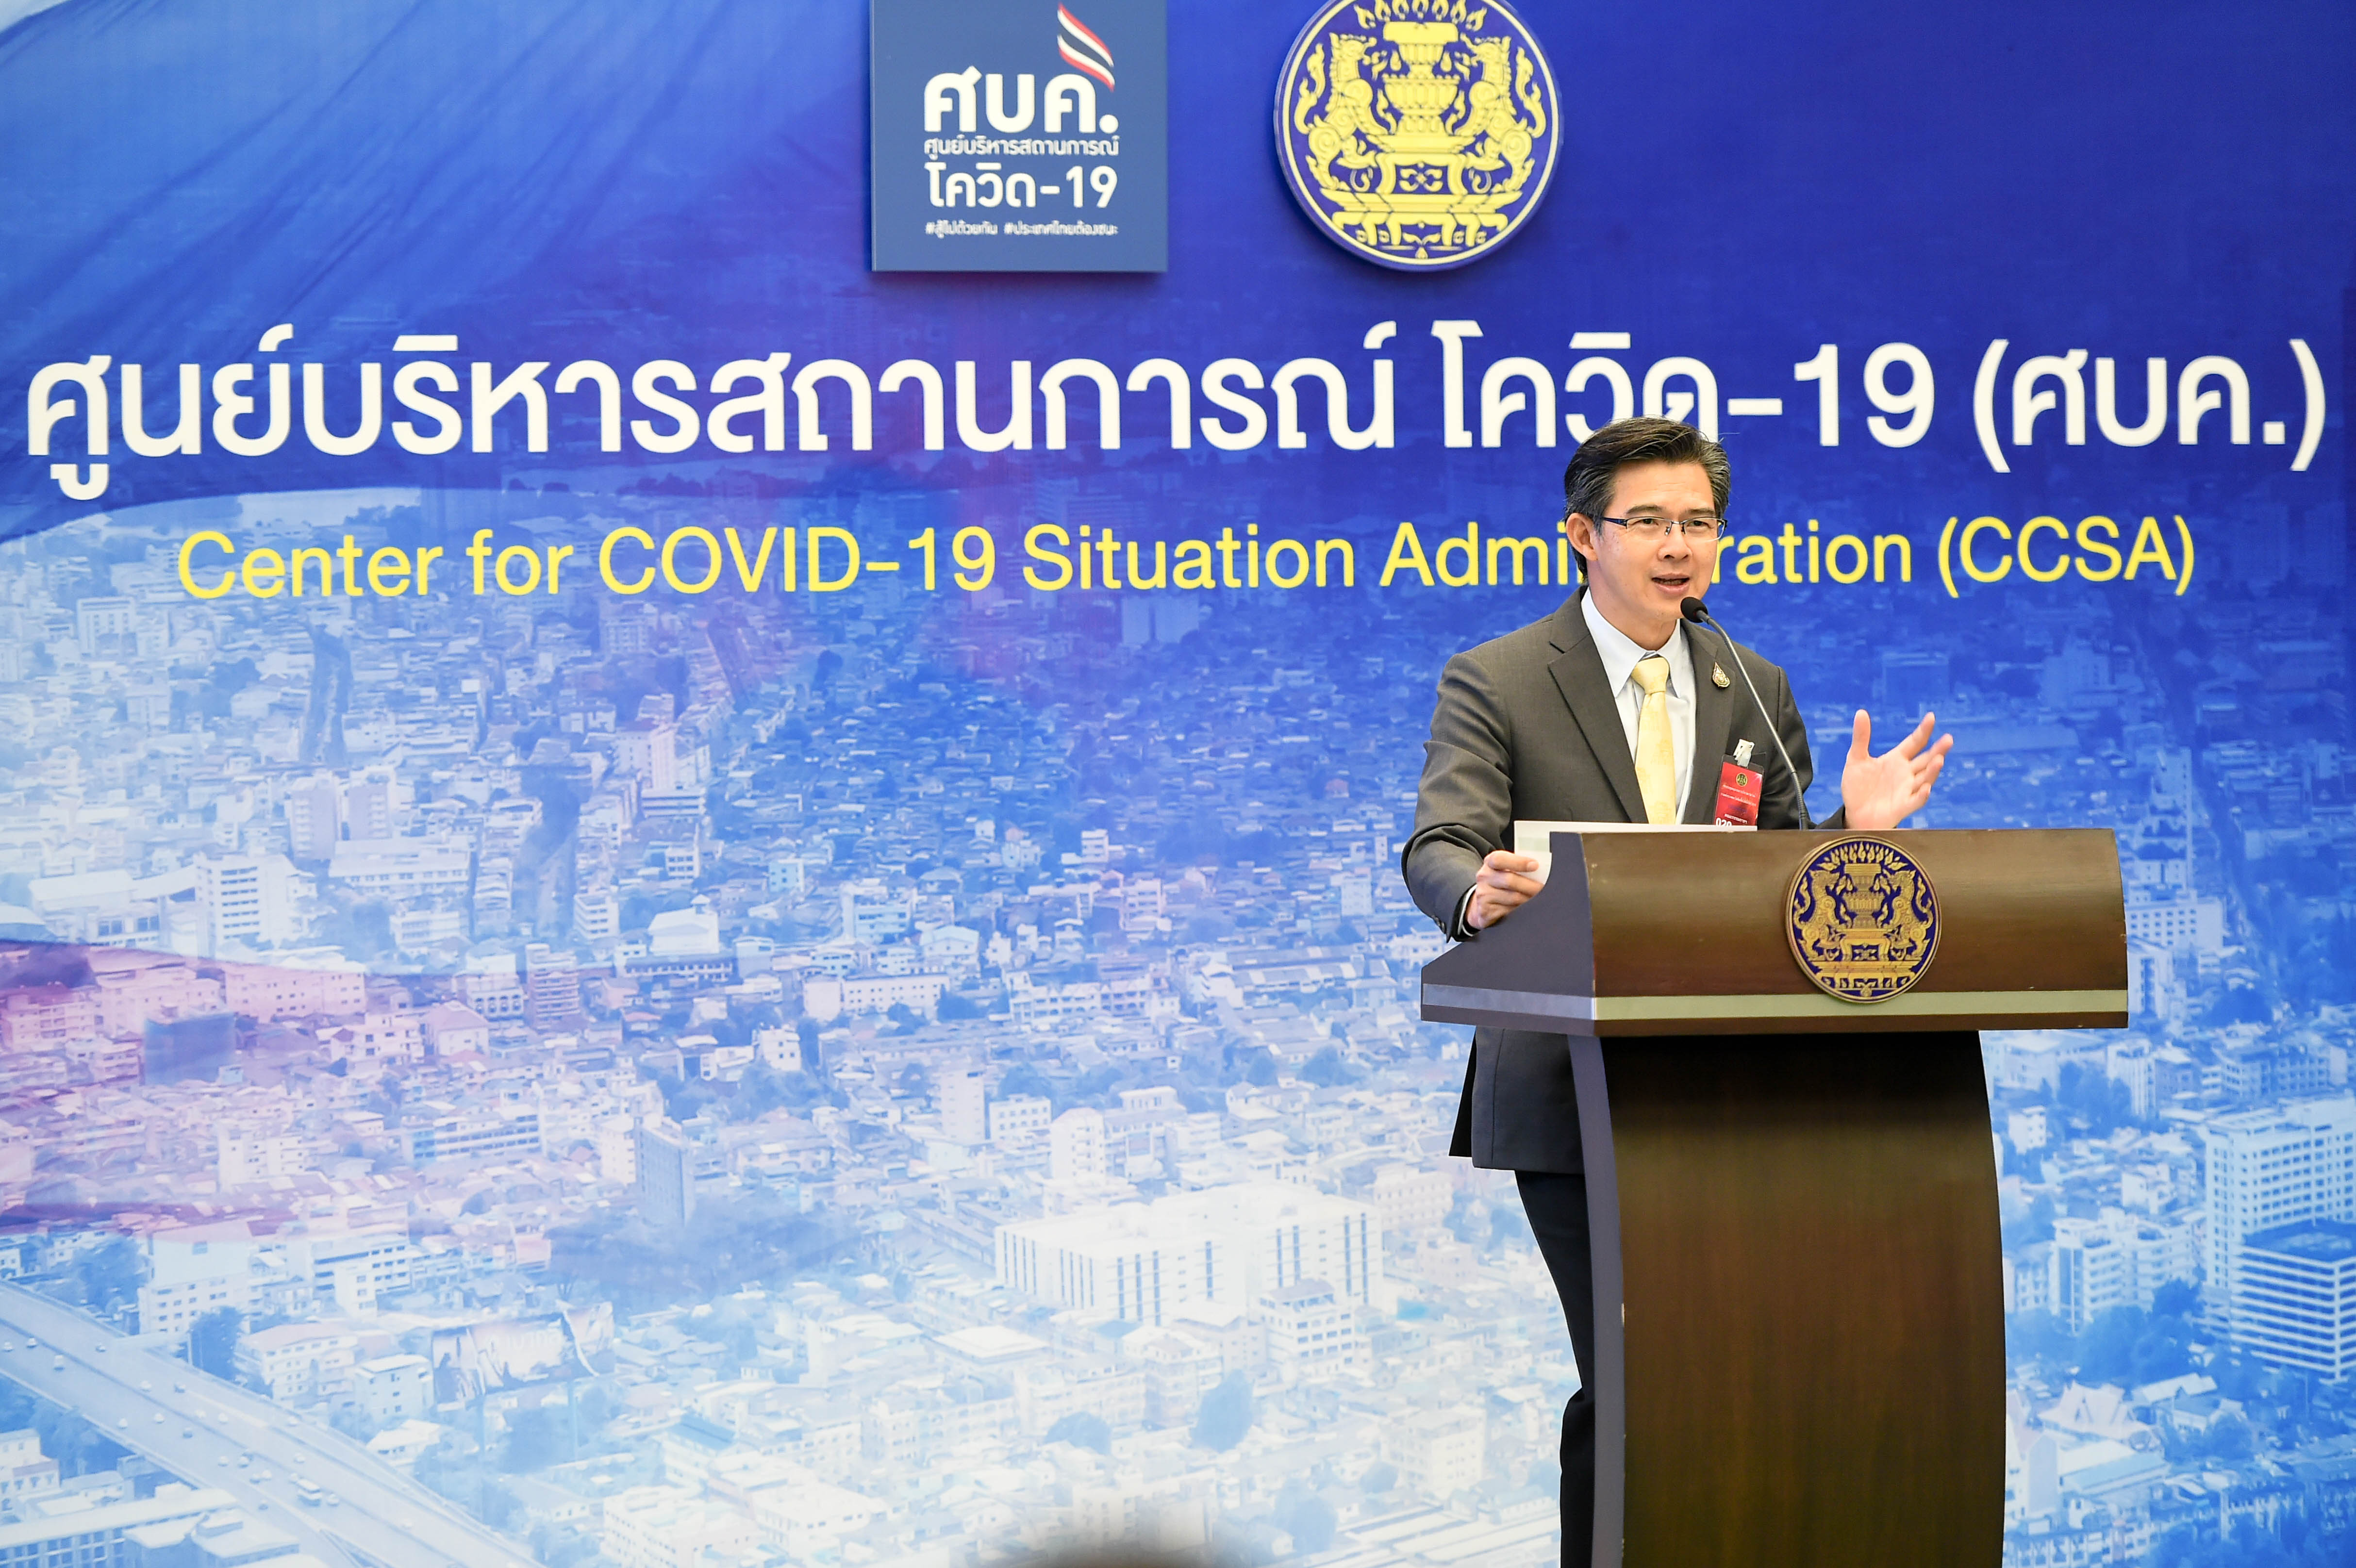 รัฐบาลไทย-ข่าวทำเนียบรัฐบาล-ศบค. แถลงสถานการณ์โควิด-19 จำนวนผู้ติดเชื้อ  ลดลงต่อเนื่อง แจงบทเรียนที่ได้จากการดำเนินงานควบคุมป้องกันโรค จ.ภูเก็ต